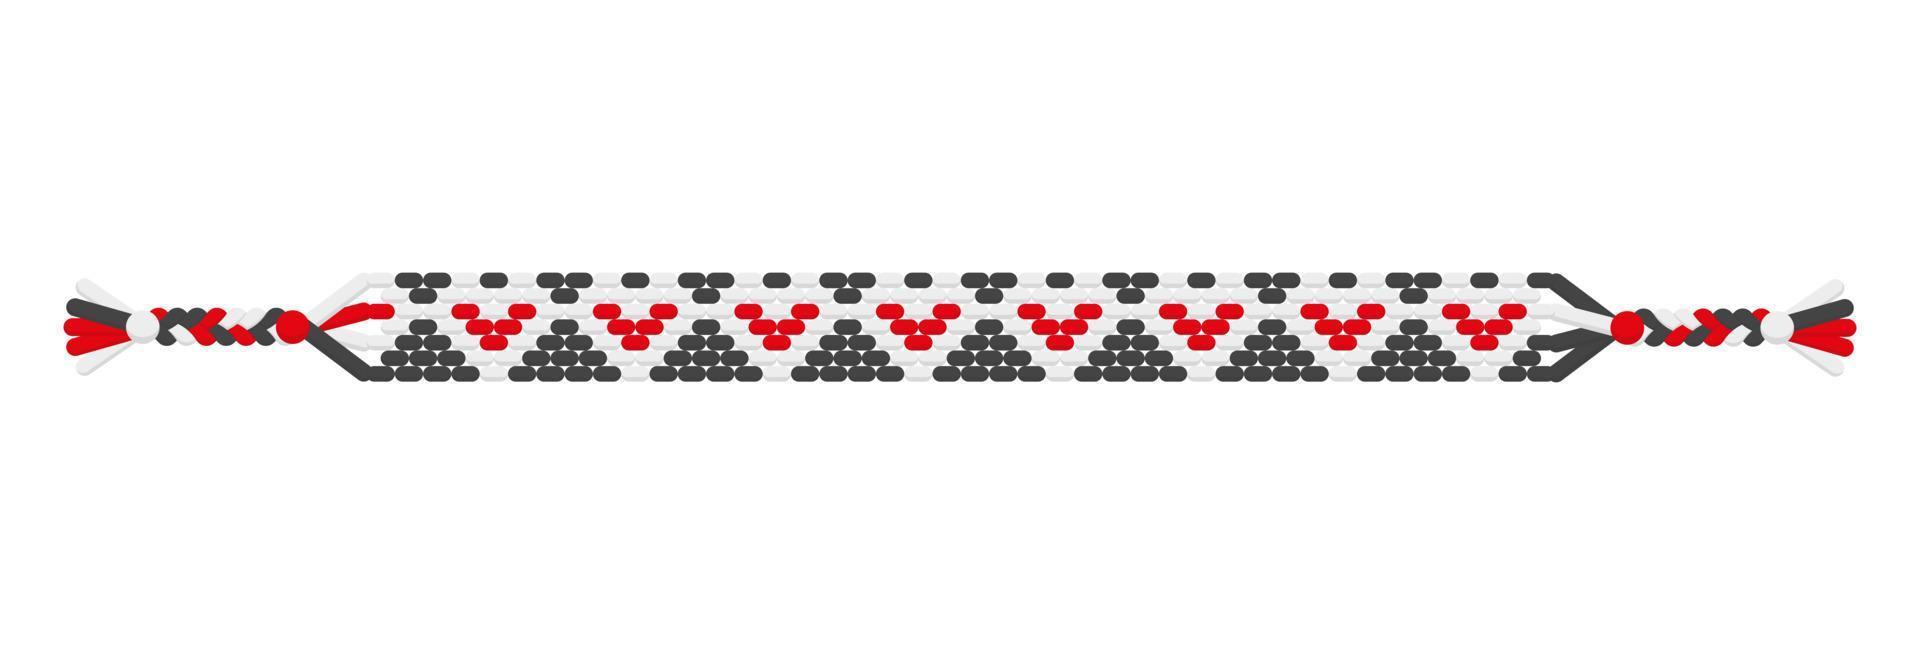 Vector boho love handmade hippie friendship bracelet of black, white and red threads.